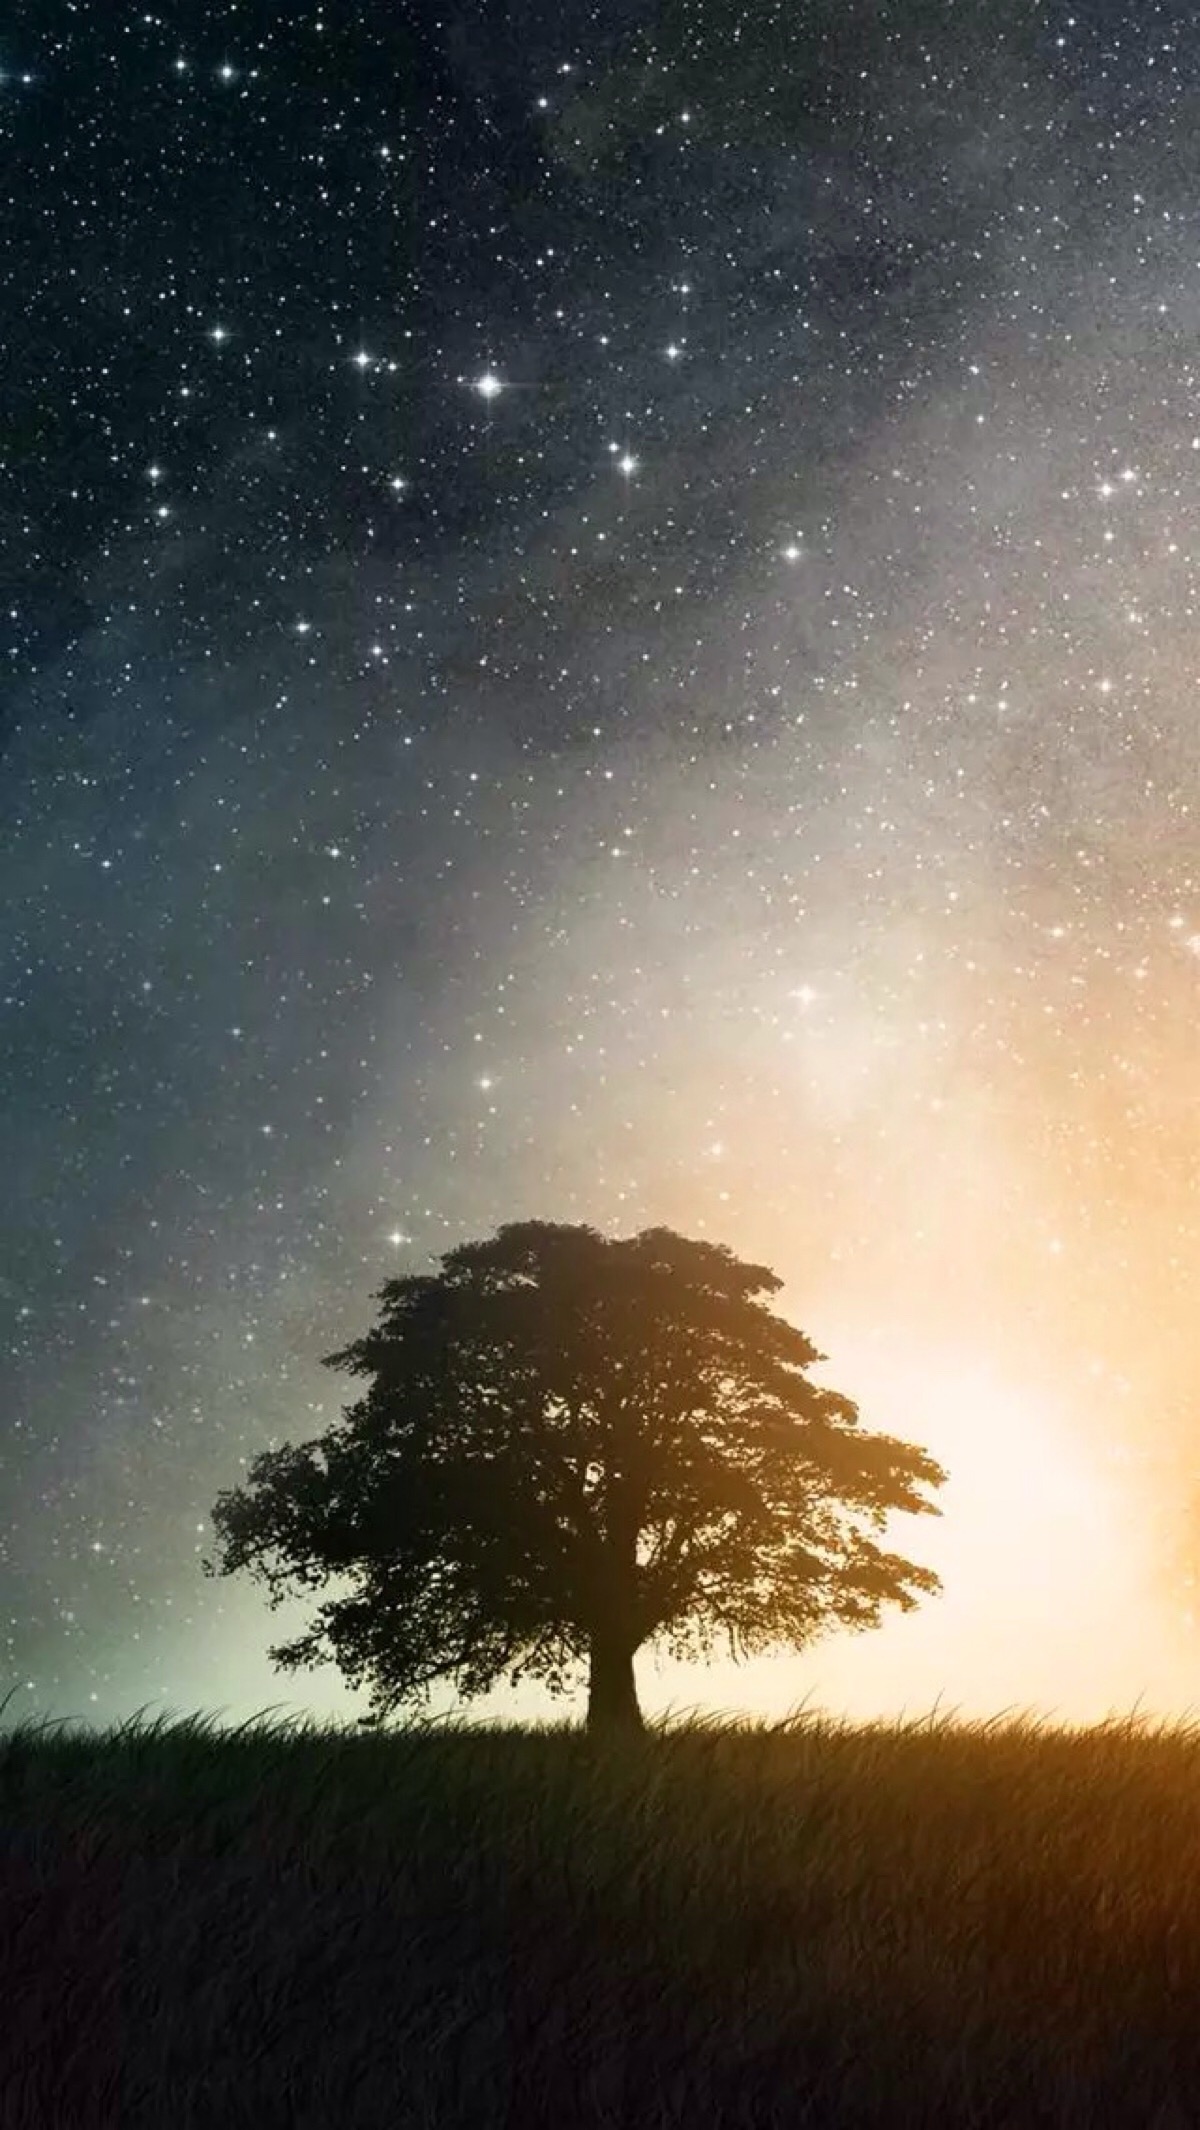 唯美星空 夜景 夜空 树木 星光 自然风景 iphone手机壁纸 唯美壁纸